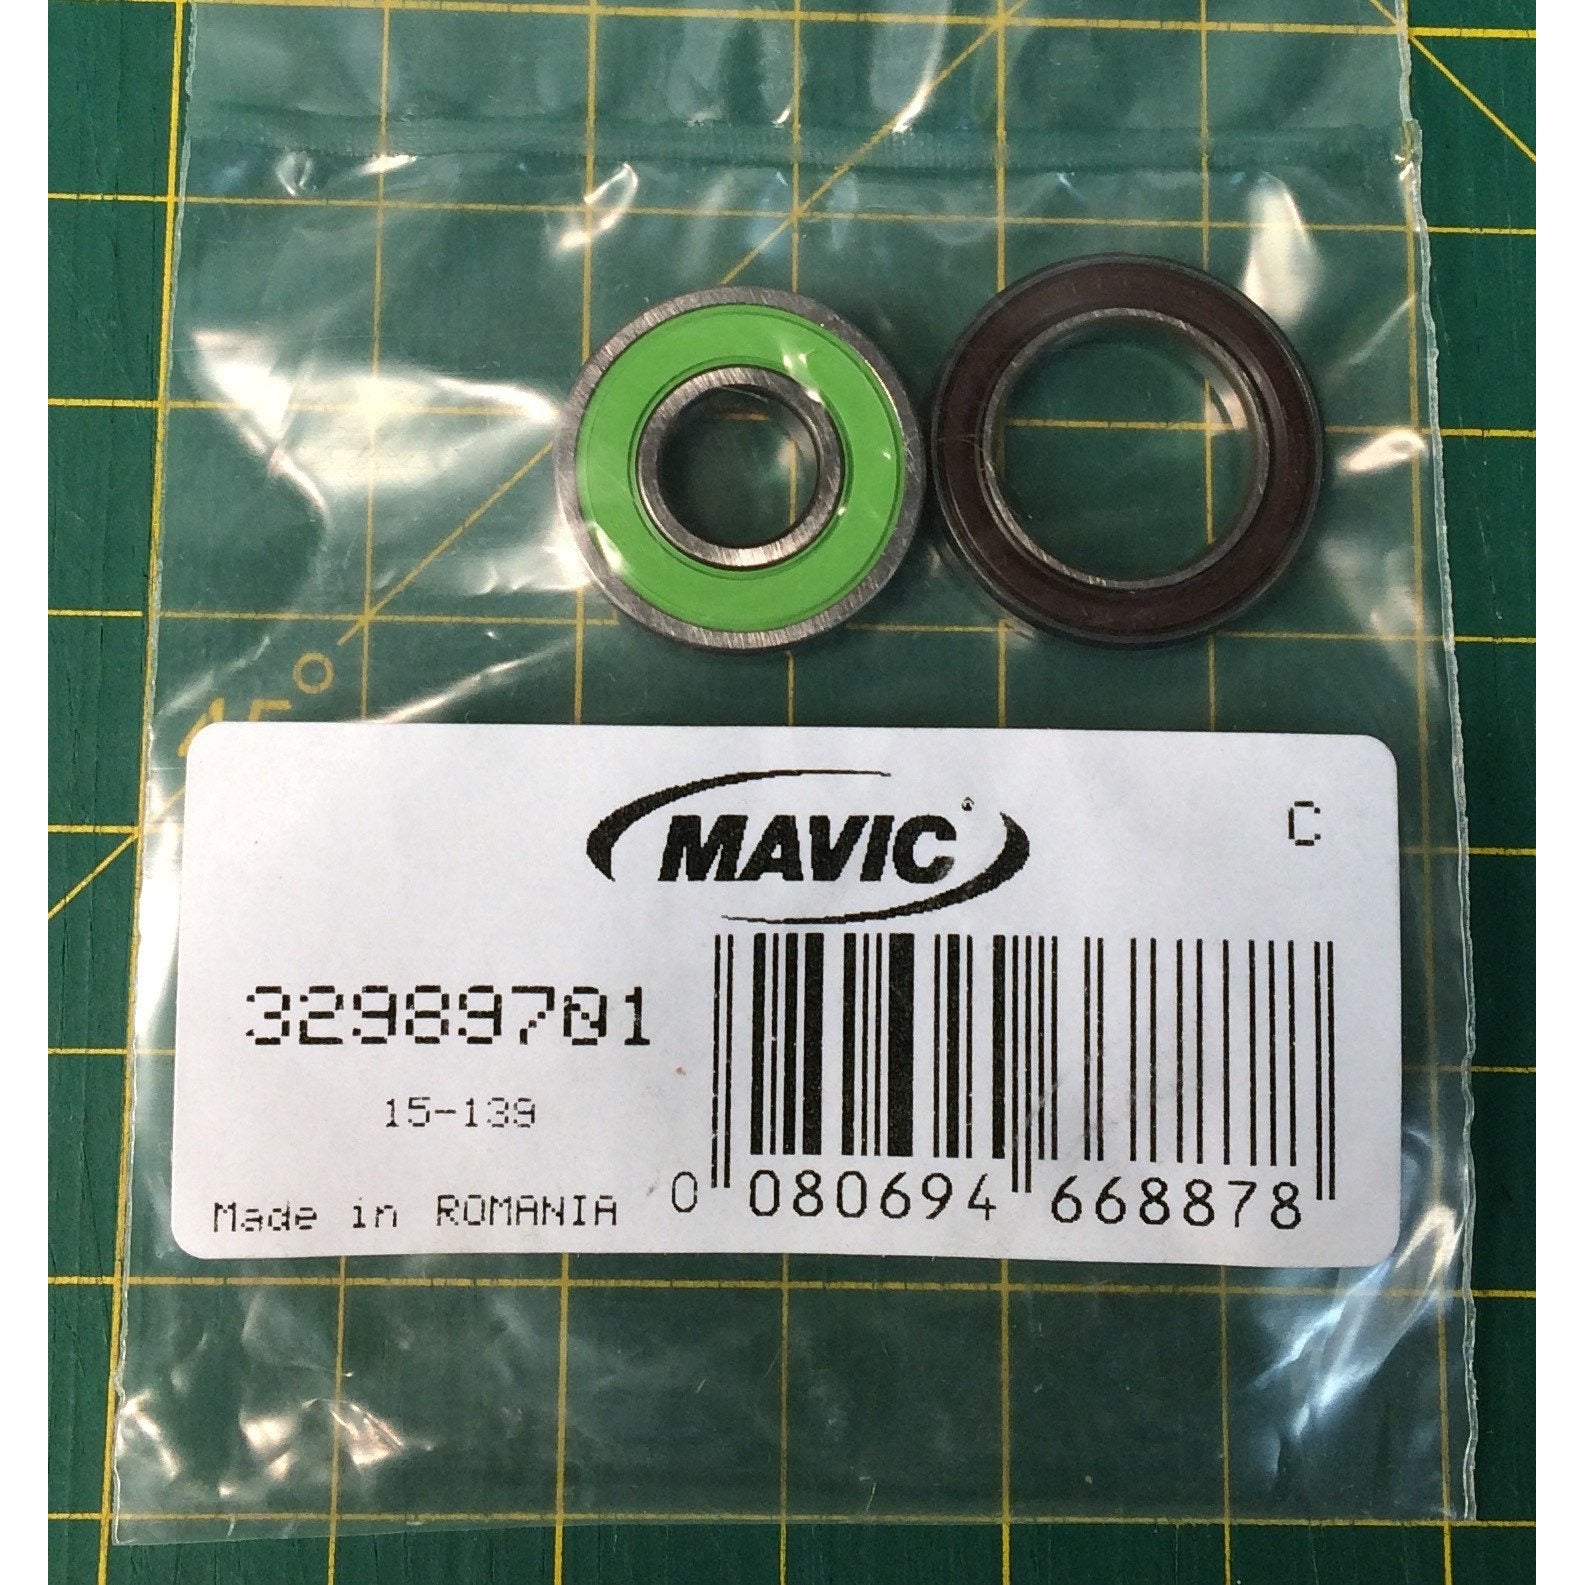 Mavic 32989701 Bearings